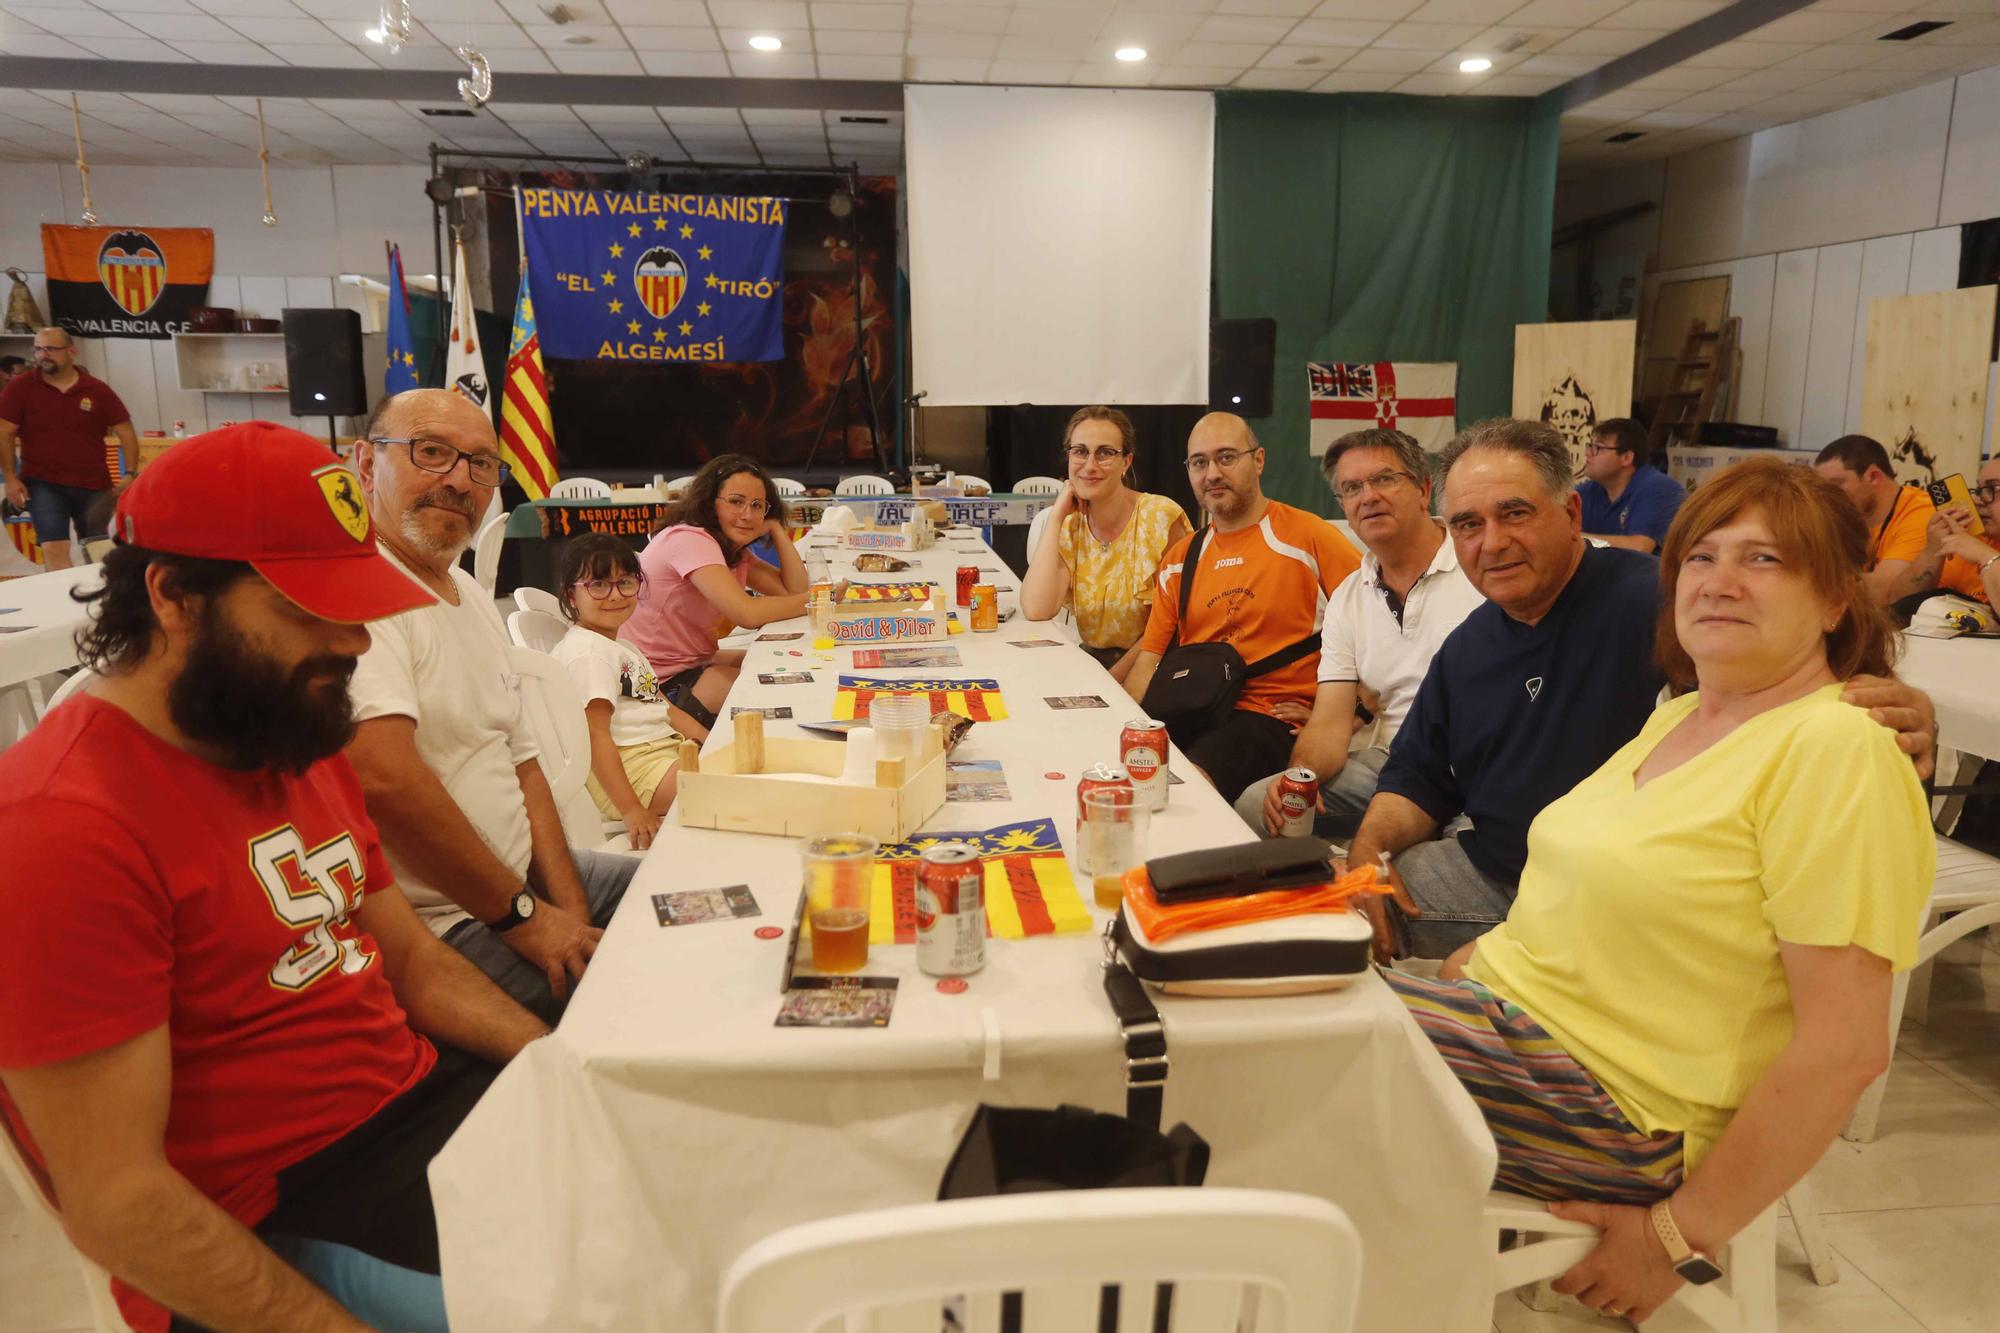 Así fue la fiesta del sector ocho de las peñas valencianistas en Algemesí